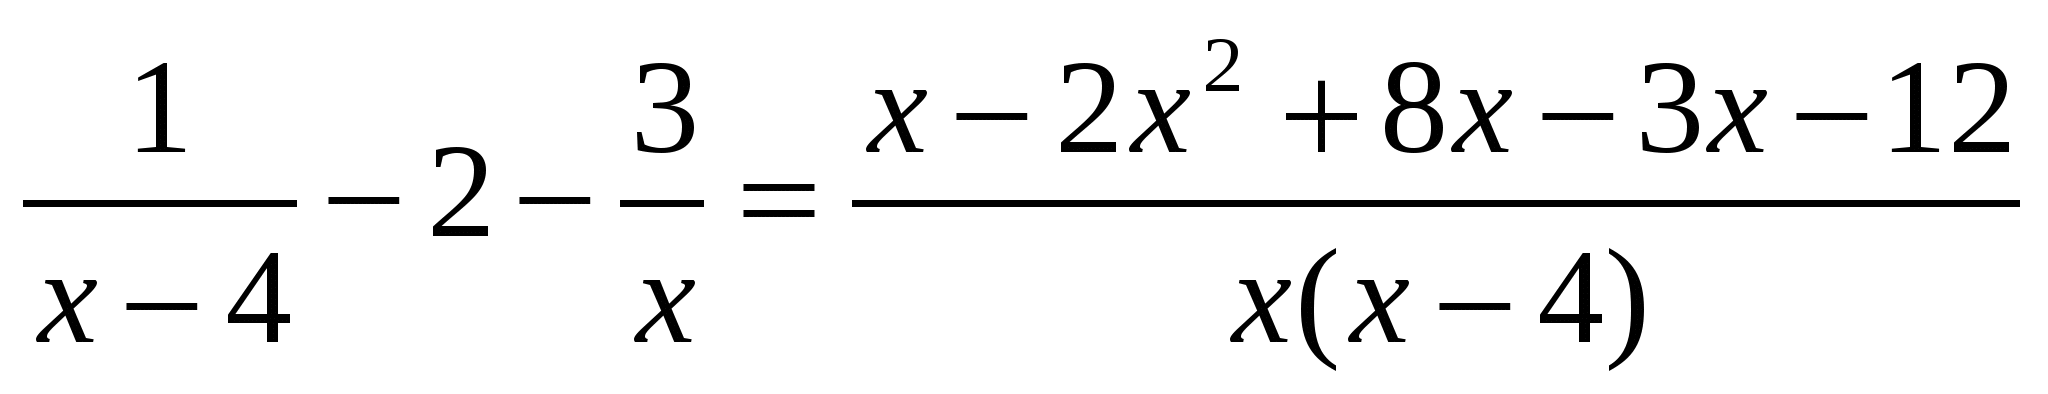 Разработка урока алгебры на тему Способы решения различных видов уравнений и неравенств